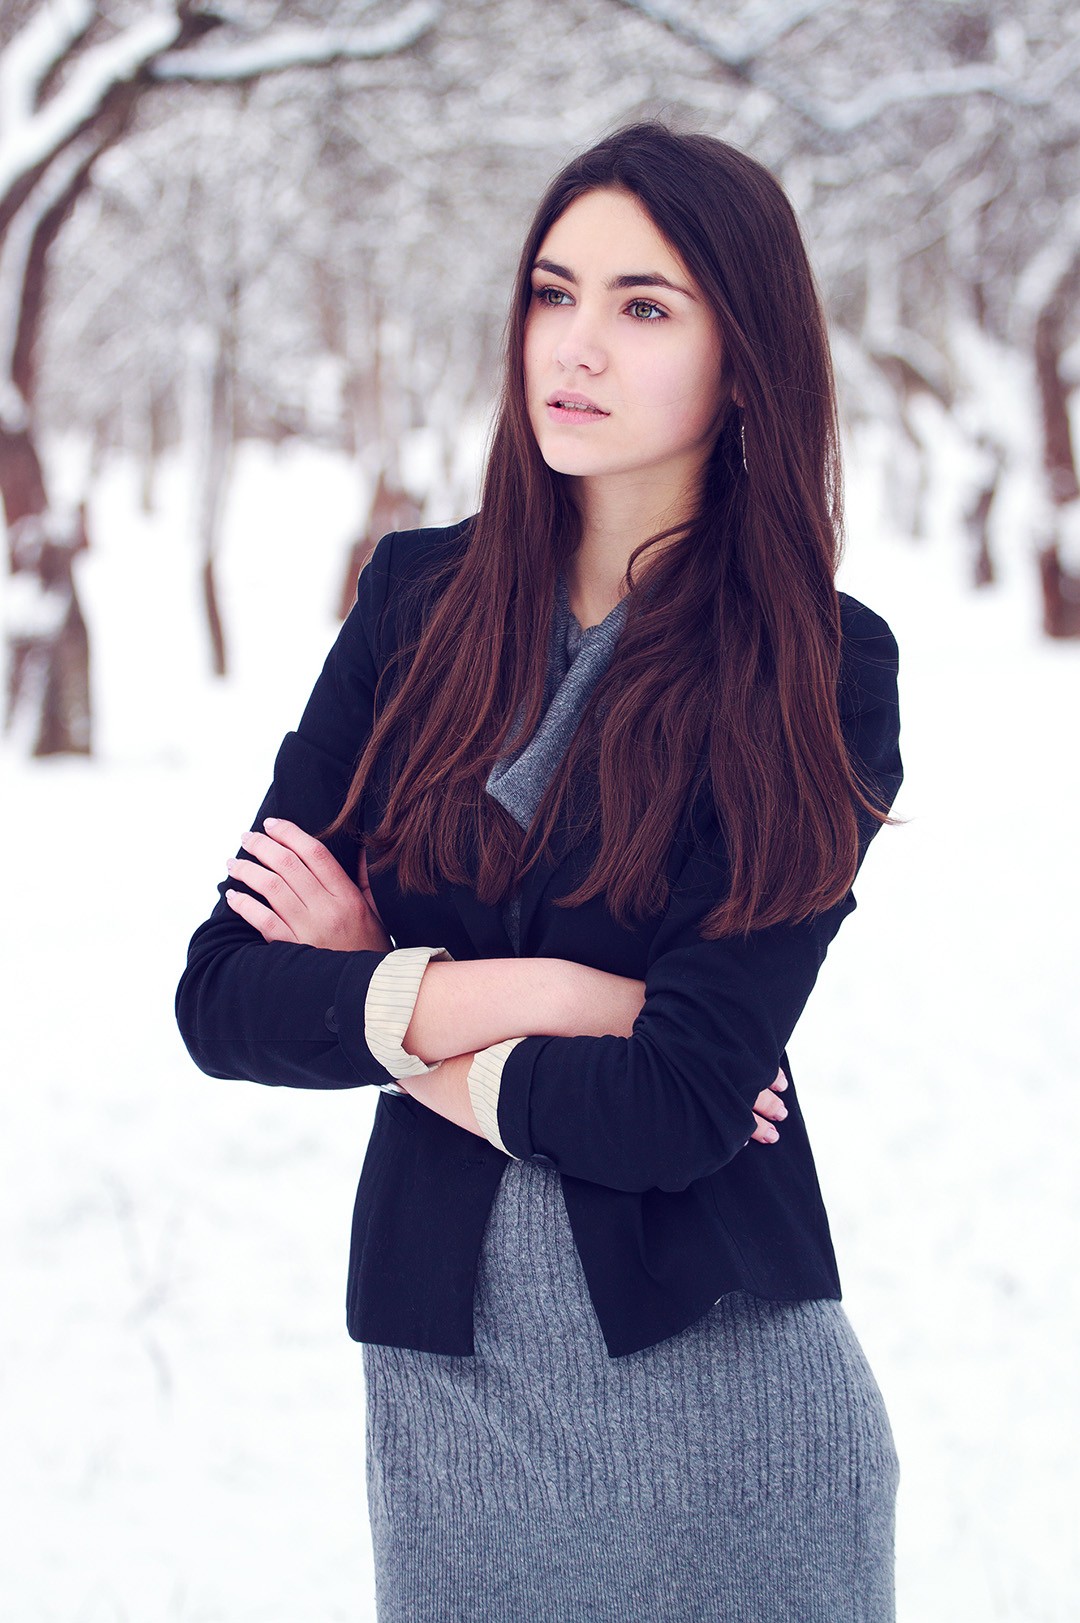 Снежная портретная съемка в Лошицком парке с моделью Лизой Павловской